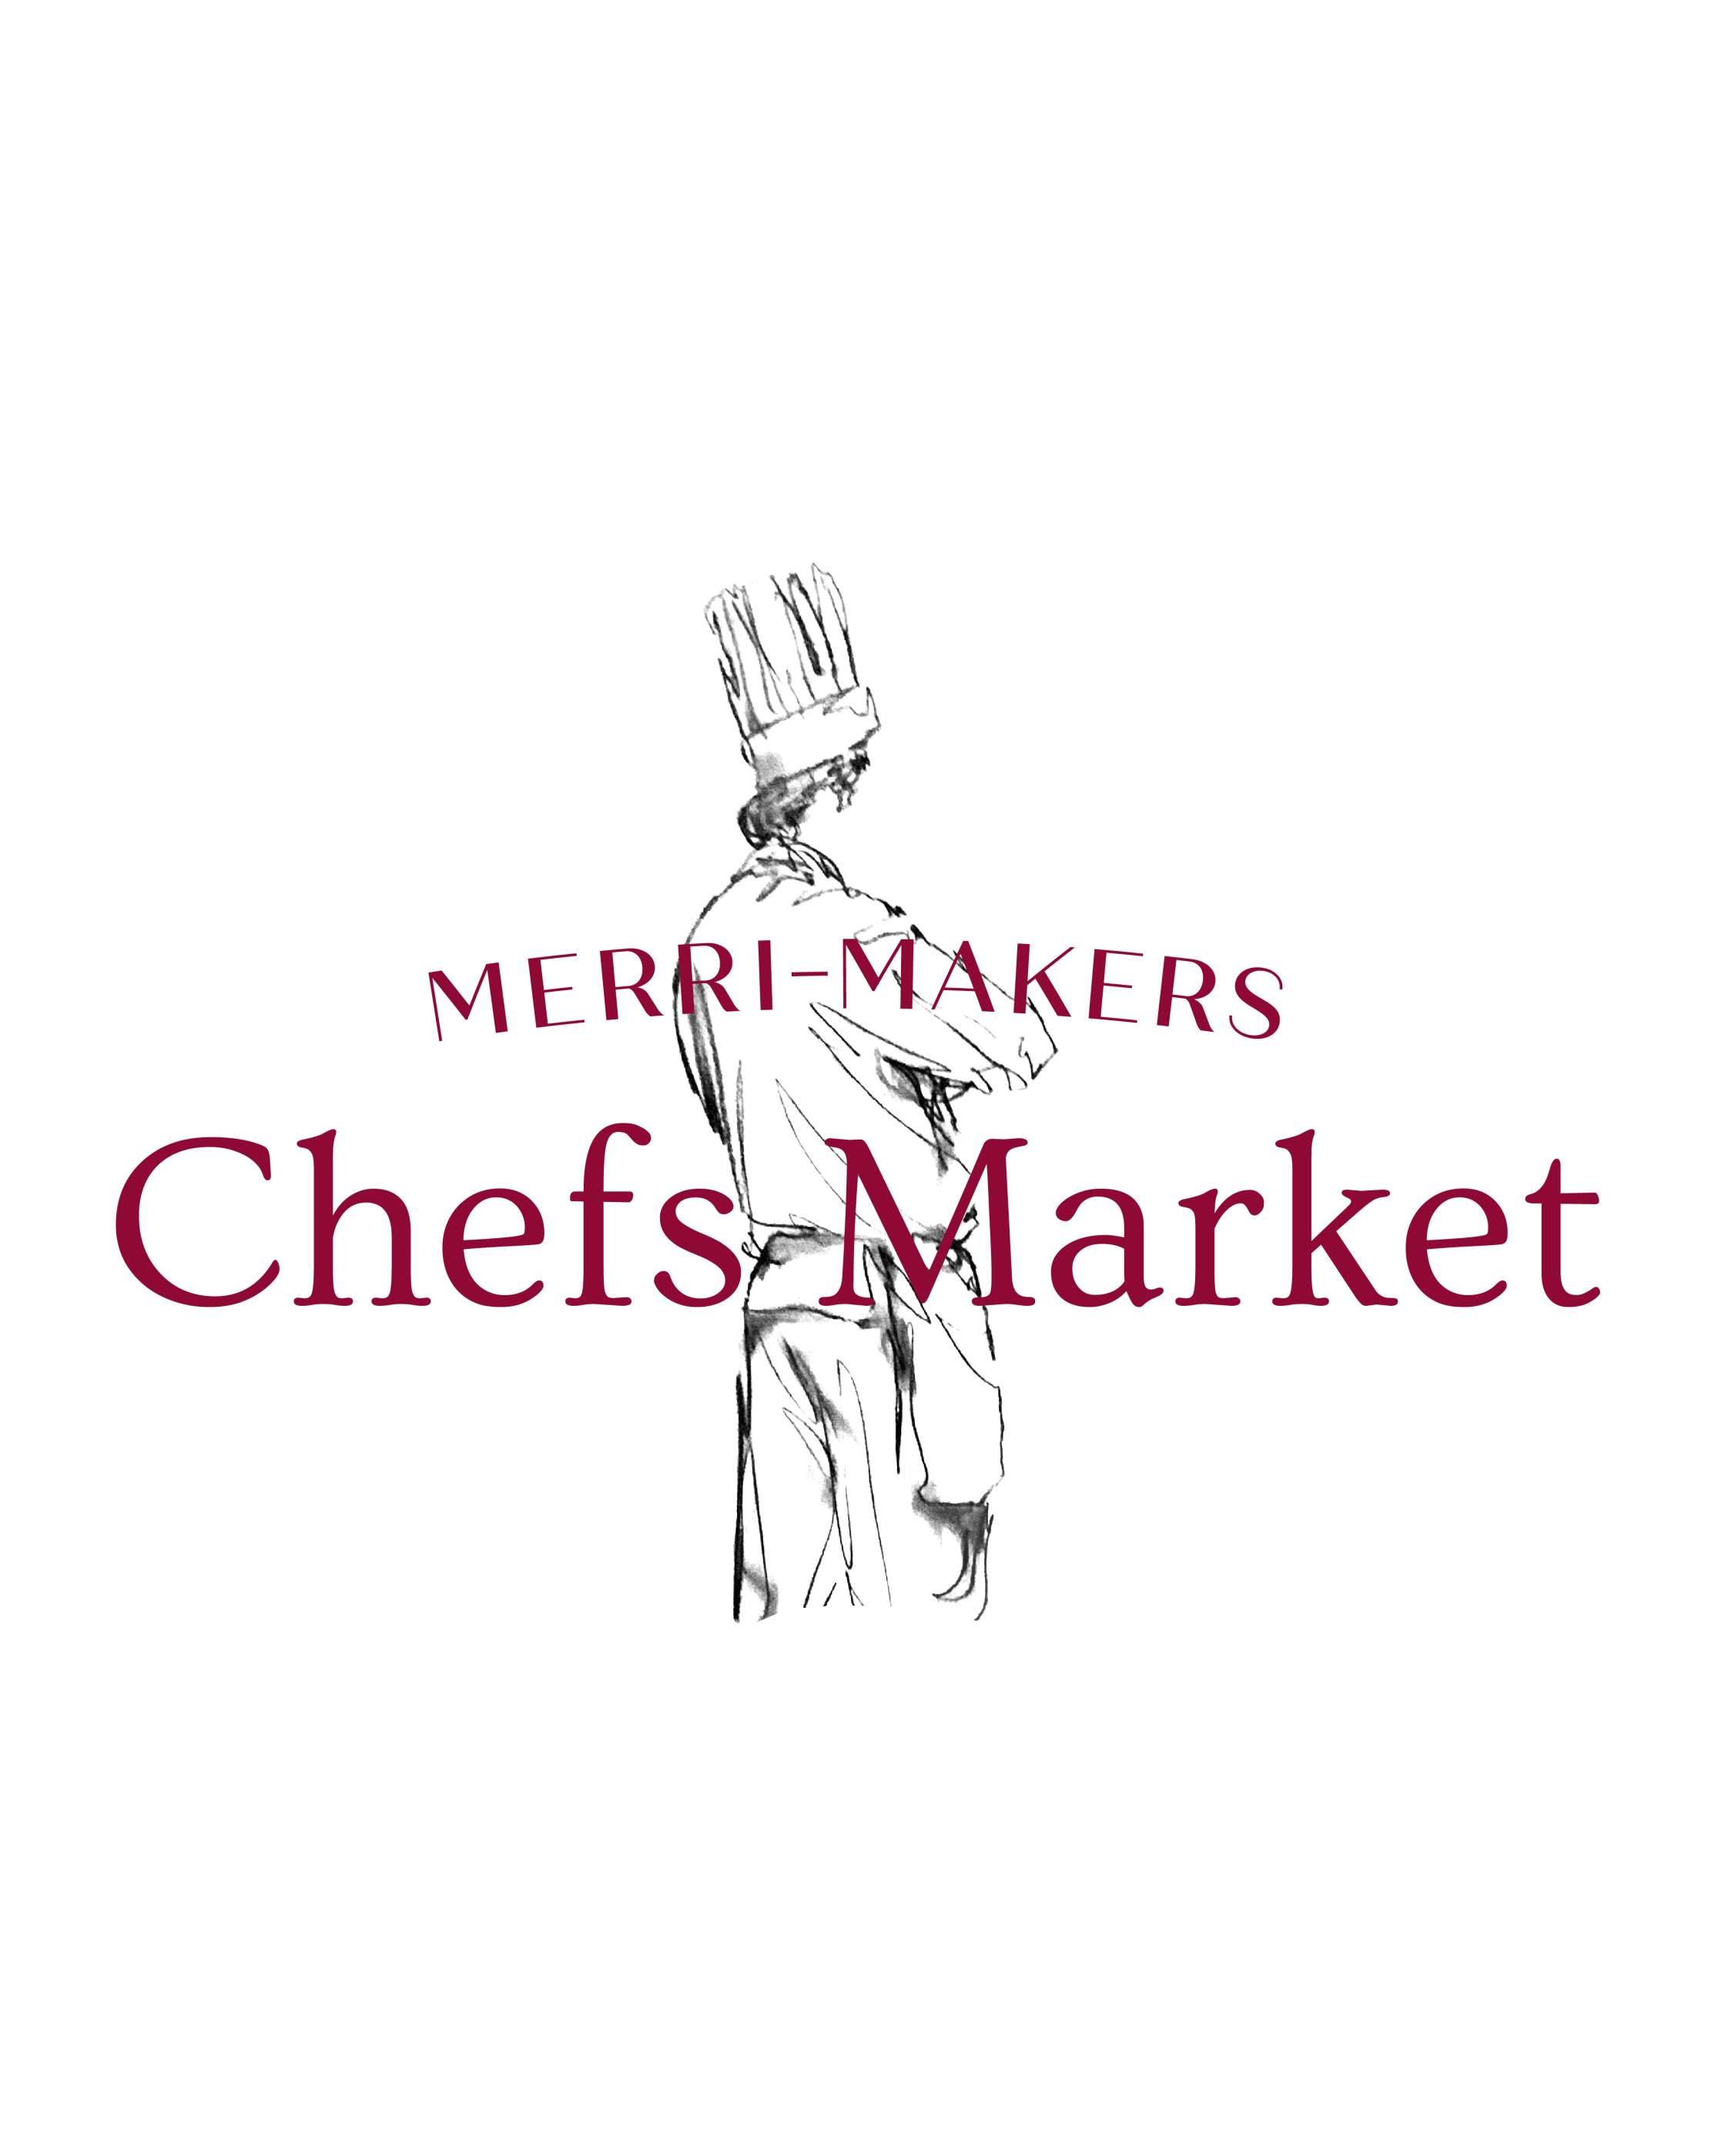 Merri-Makers Chefs Market